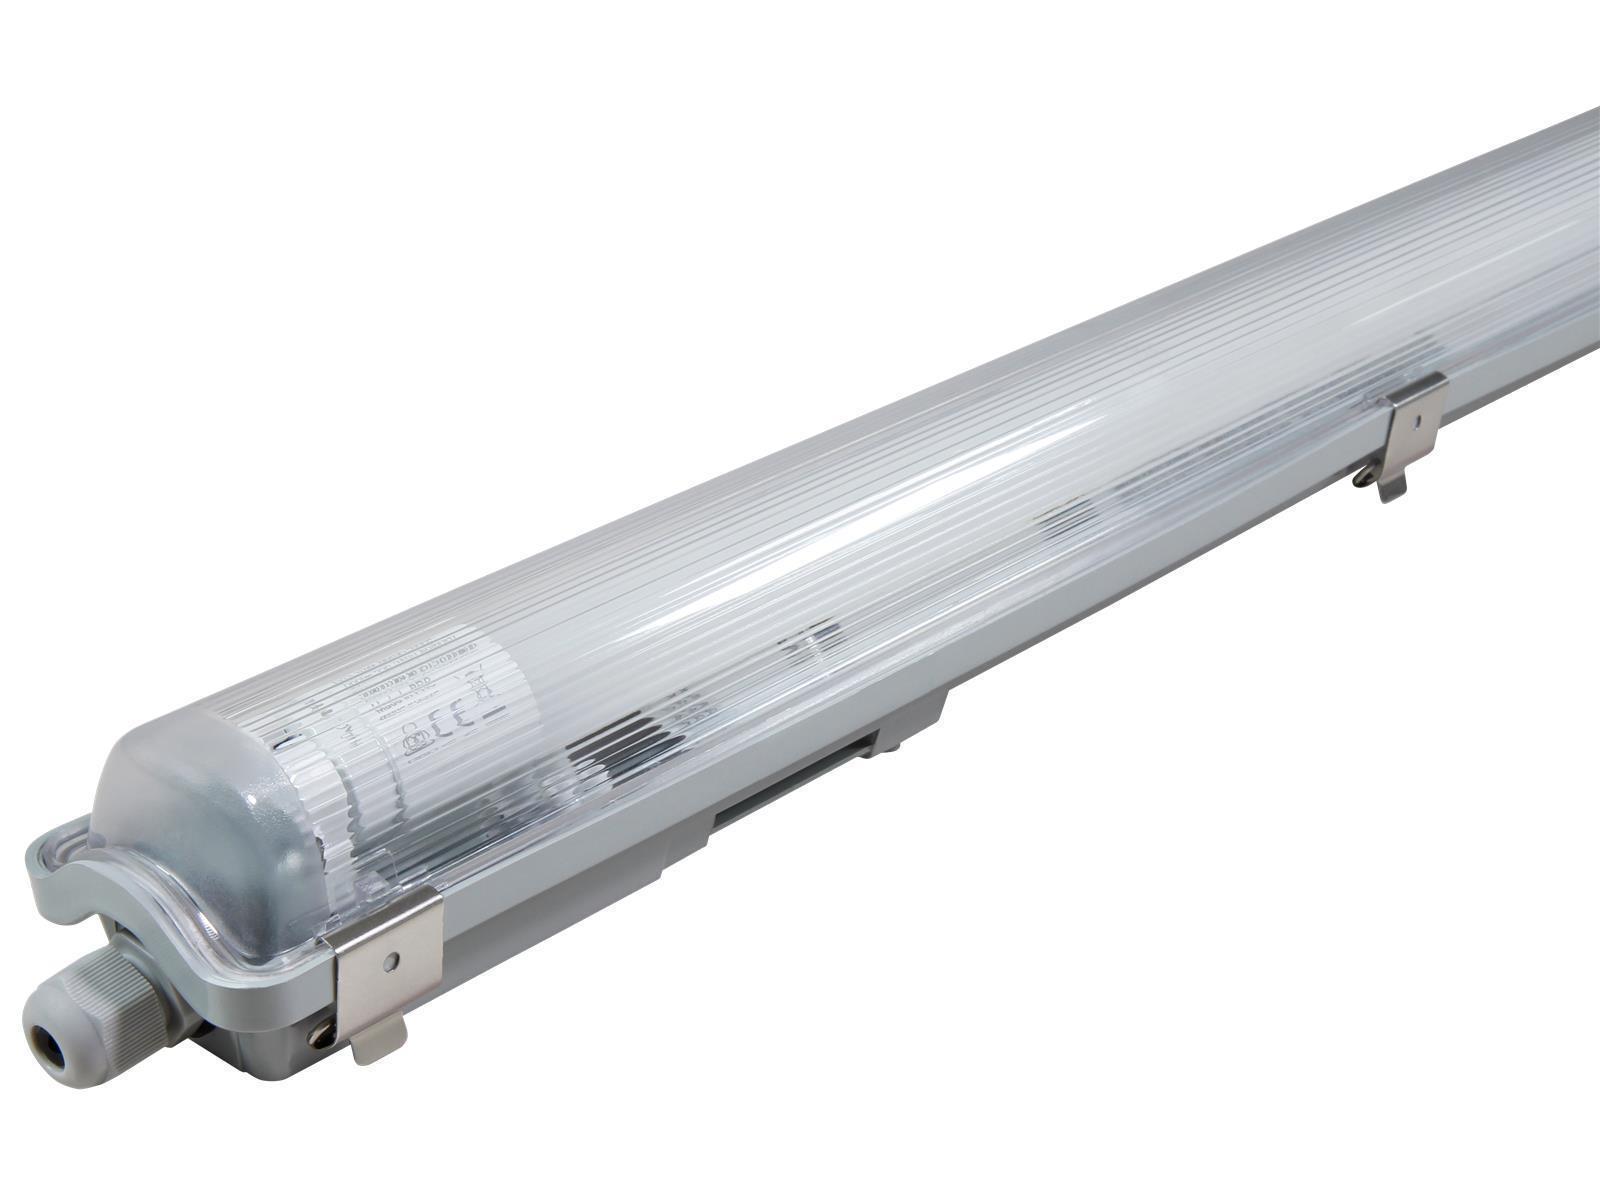 LED-Deckenleuchte für Feuchträume, IP65, 1x 850lm, 4000K, 60cm, neutralweiß